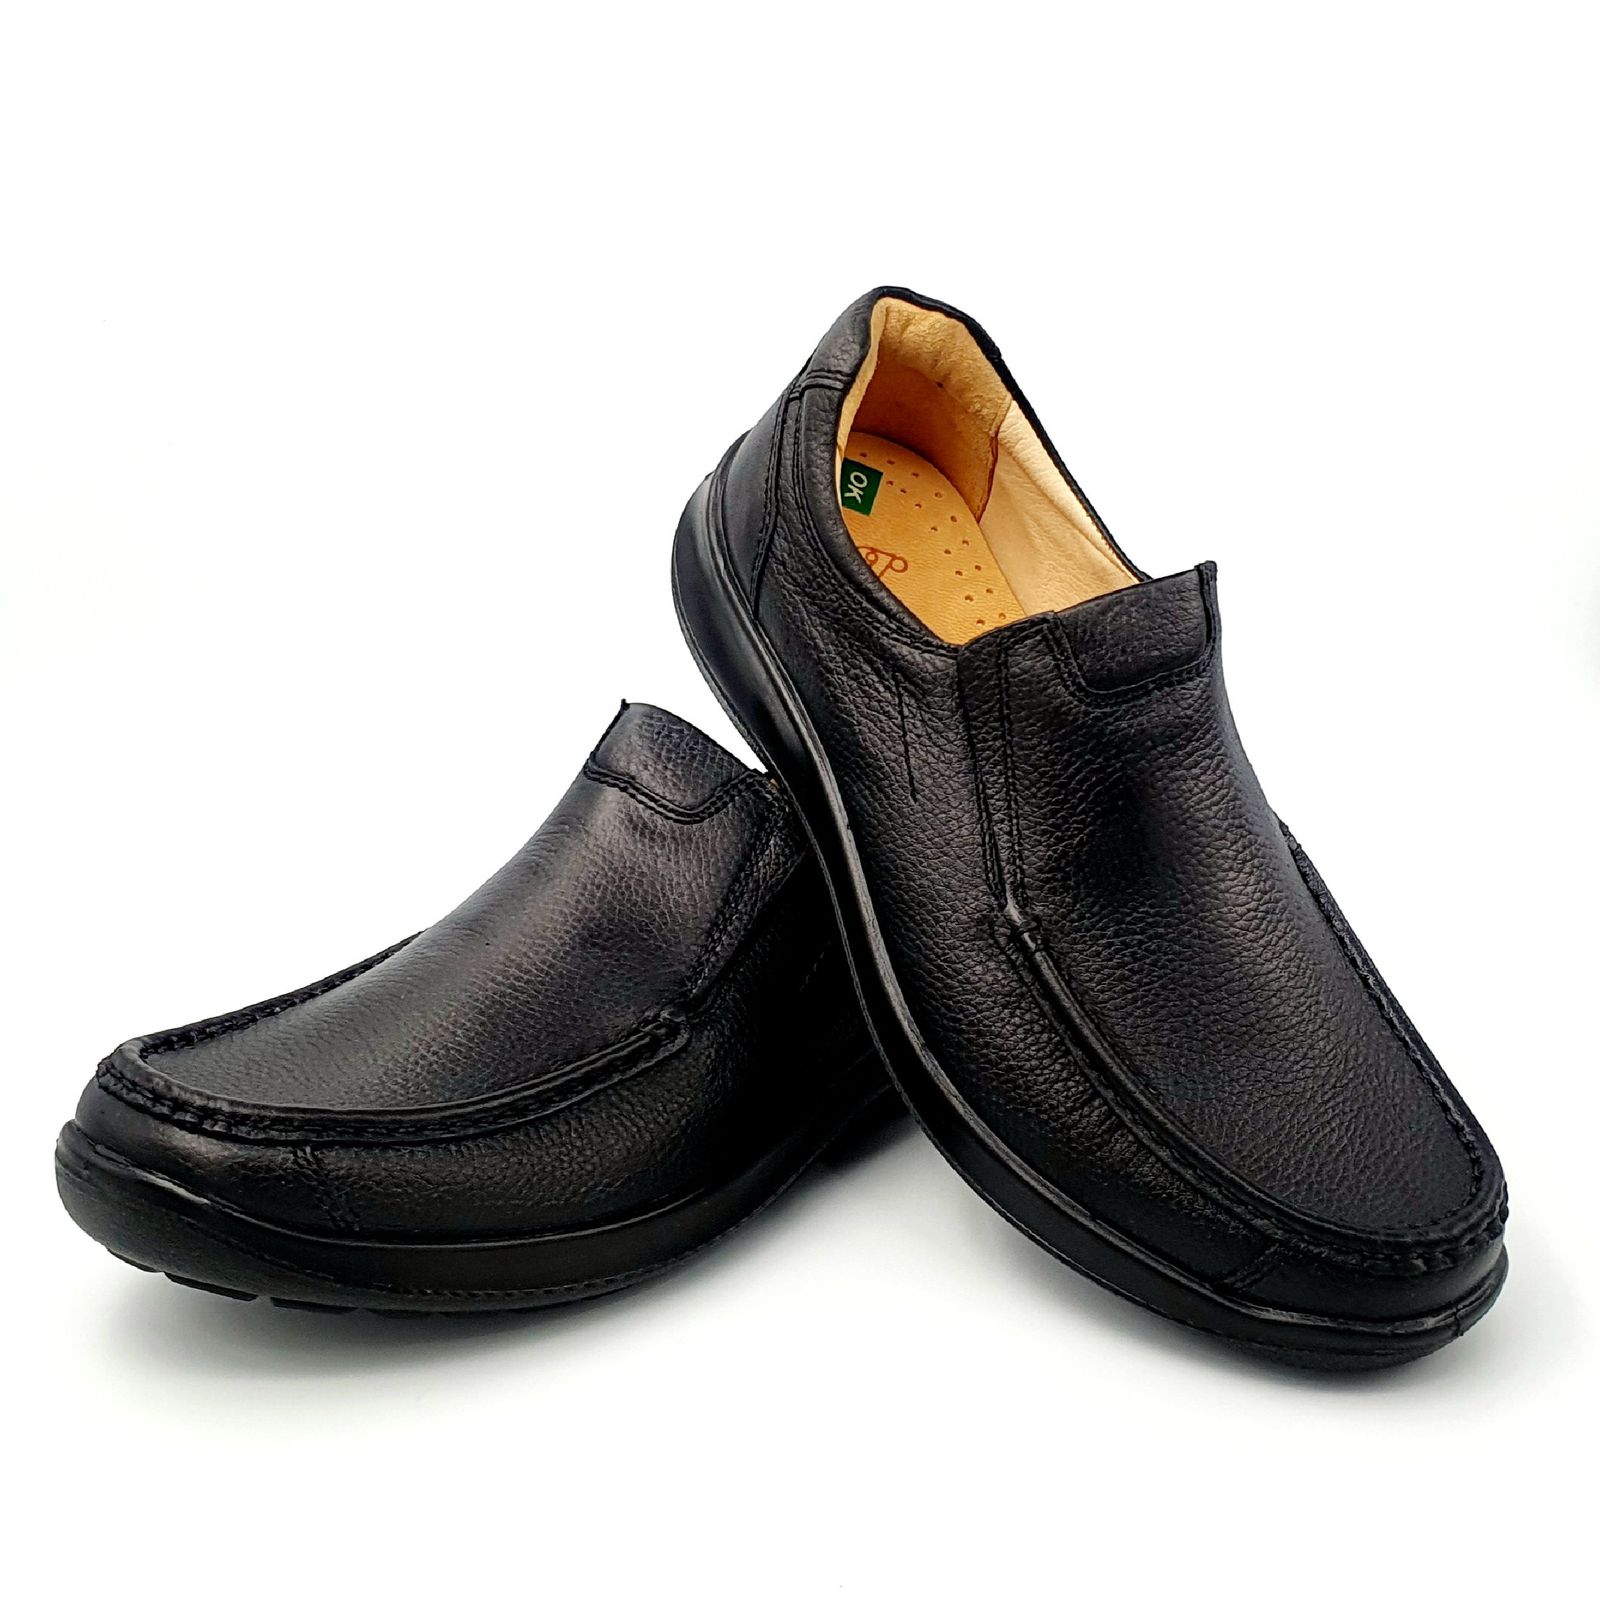 کفش روزمره مردانه شرکت کفش البرز مدل KYO کد 2383-3 -  - 4